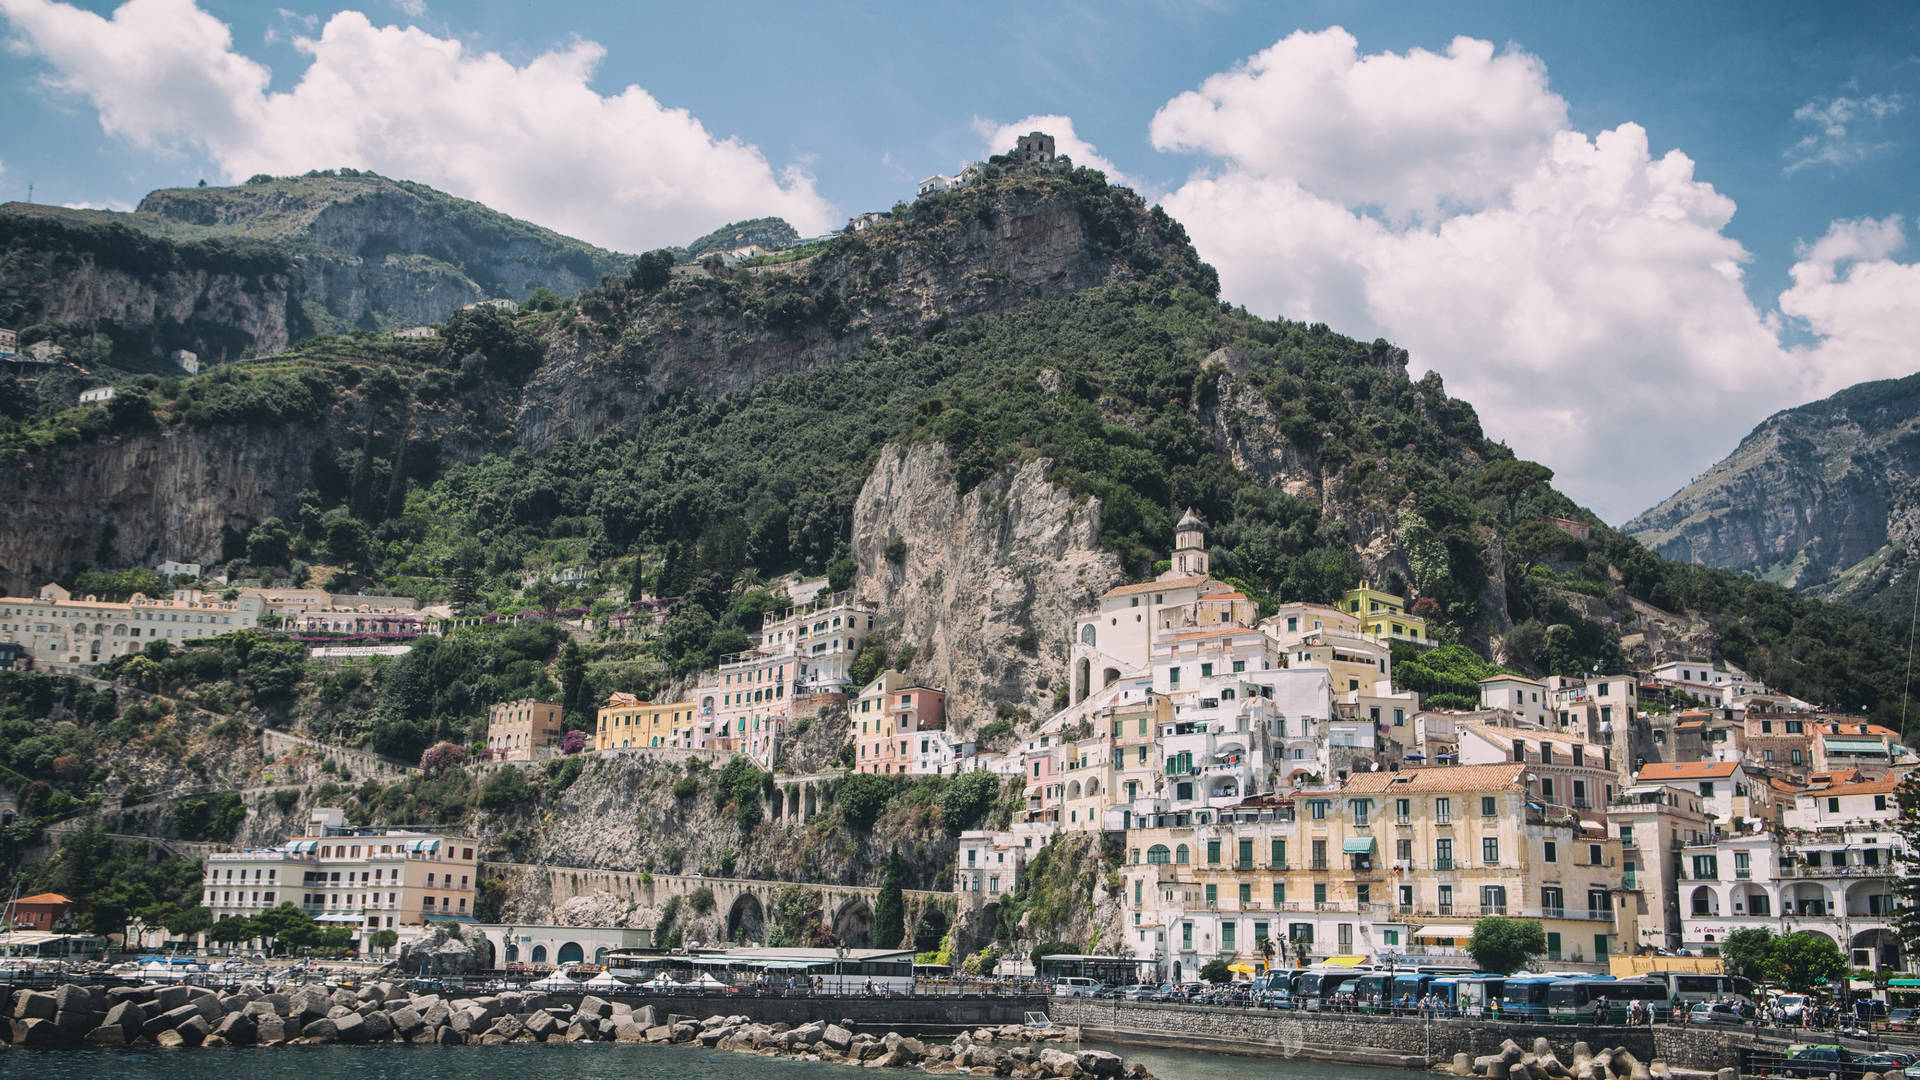 Desaturated Seaside Town In Amalfi Coast Wallpaper